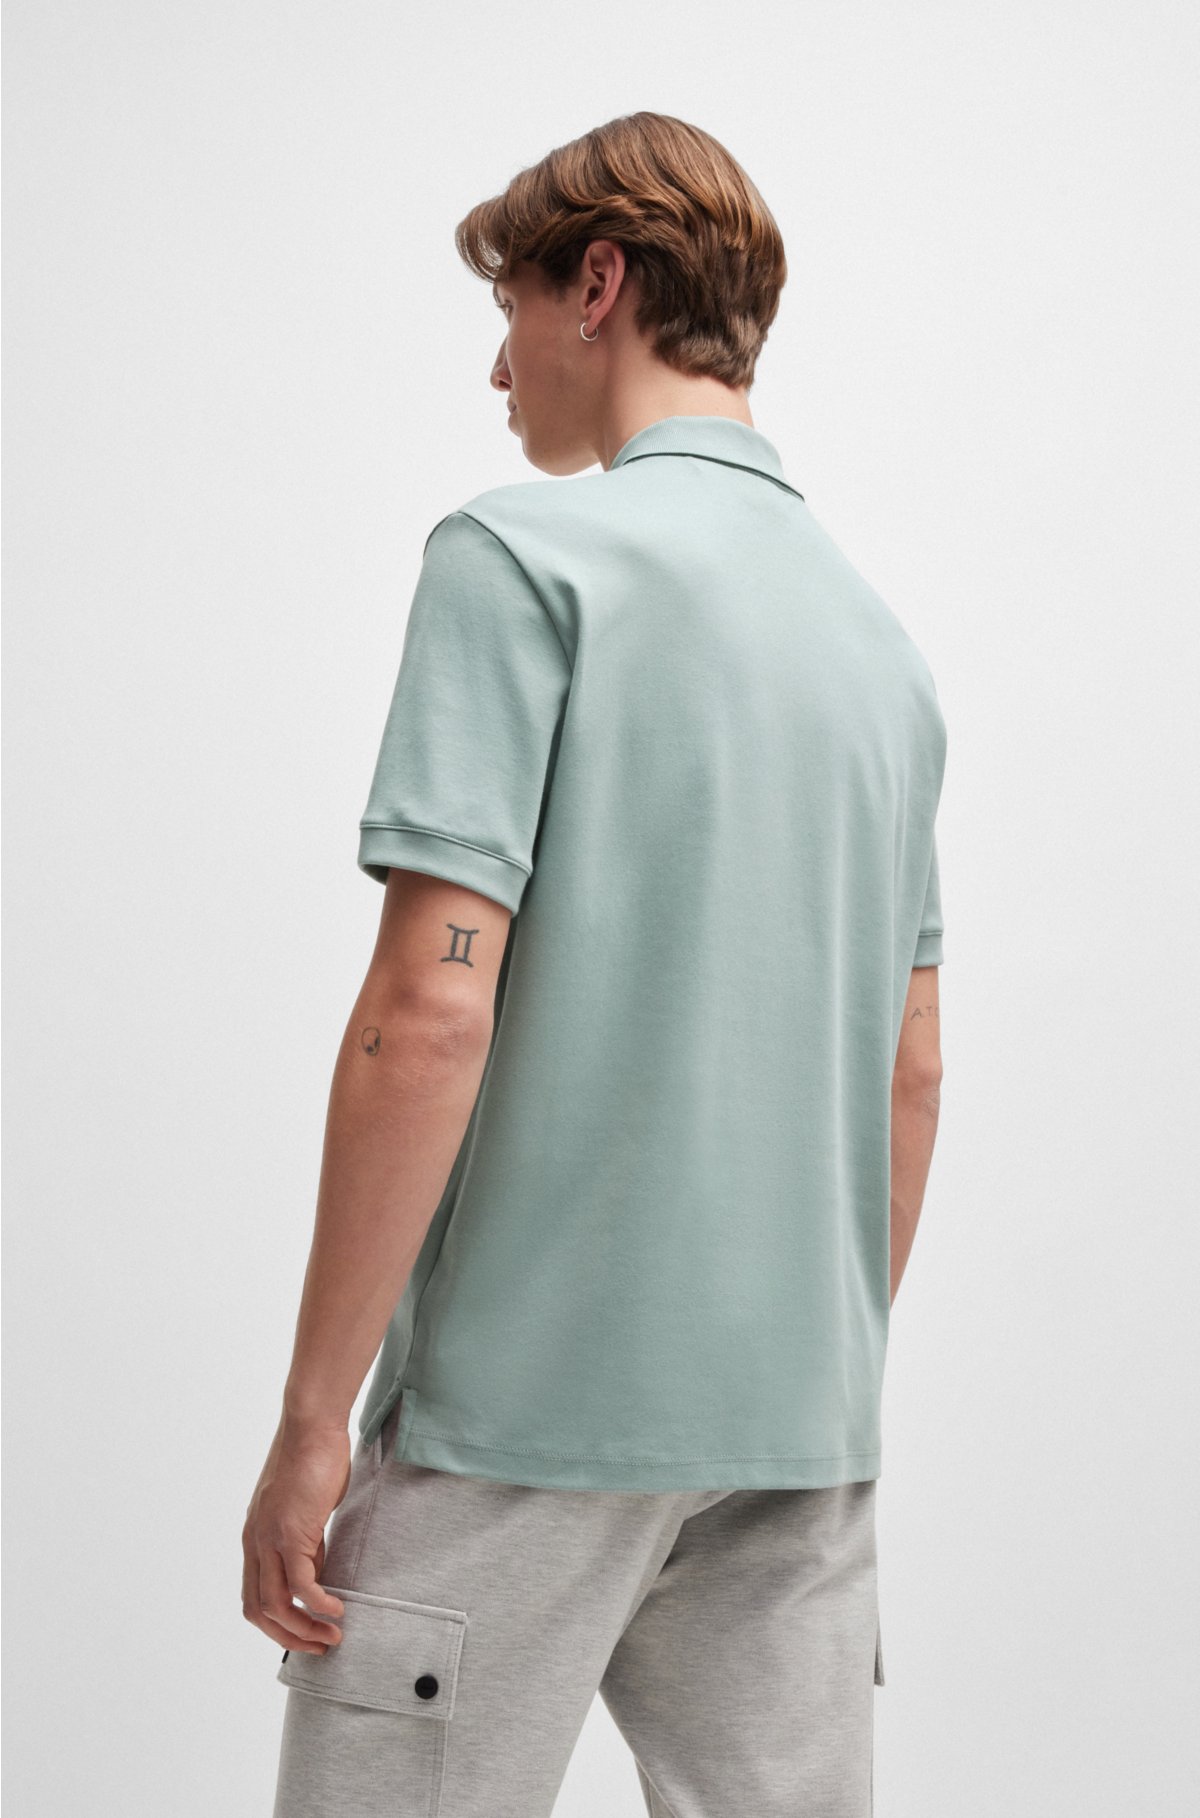 Cotton-piqué polo shirt with contrast logo, Light Grey